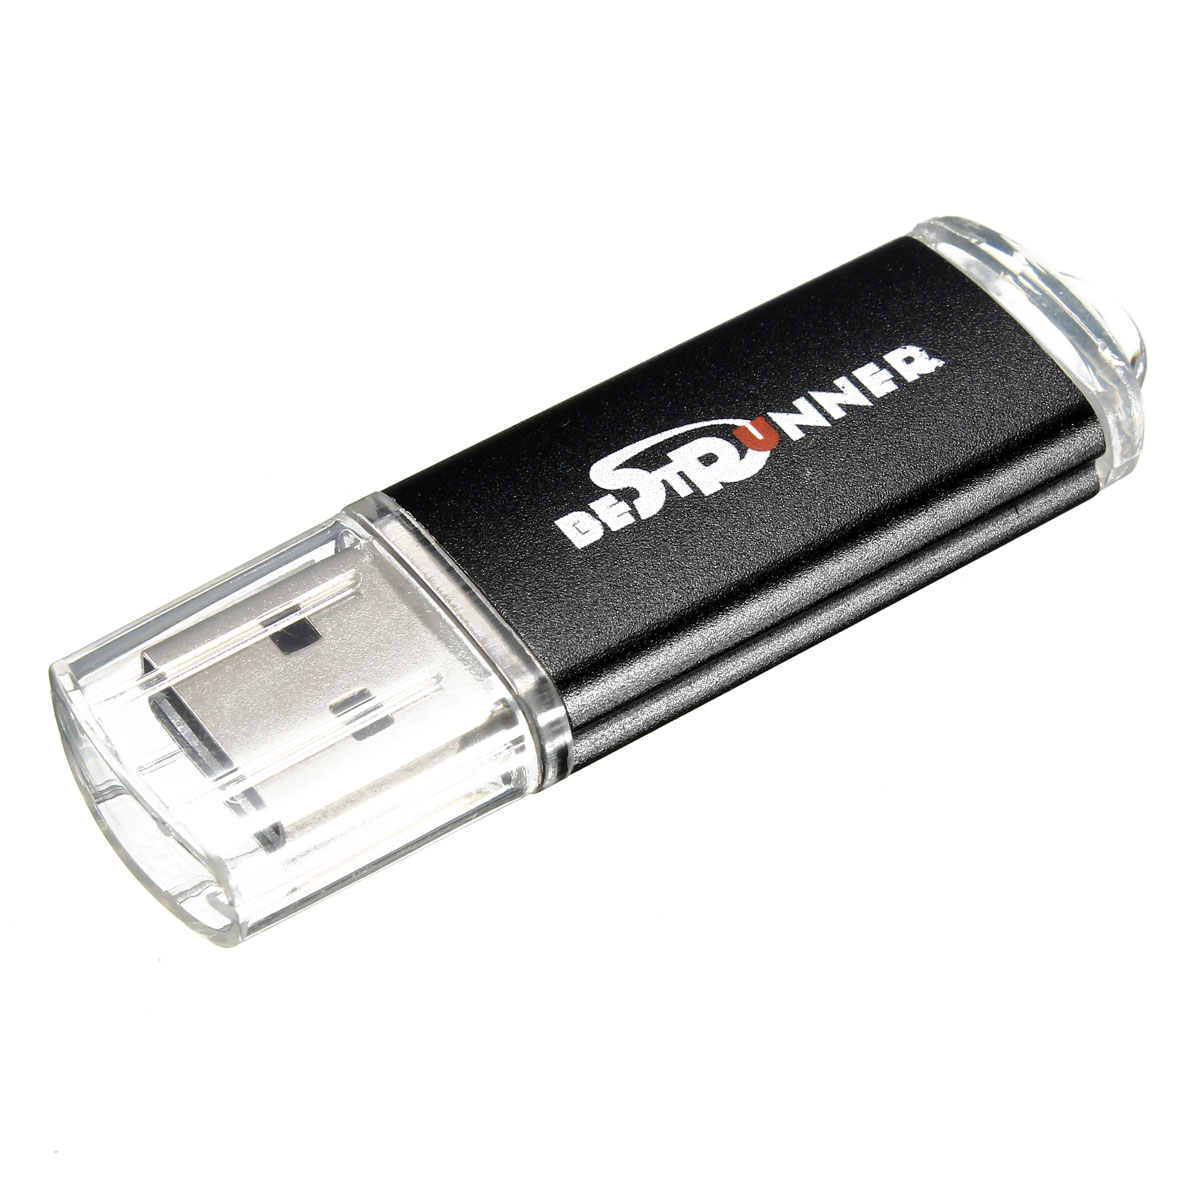 Bestrunner 32GB USB 2.0 Flash Drive Candy Color Memory U Disk 22